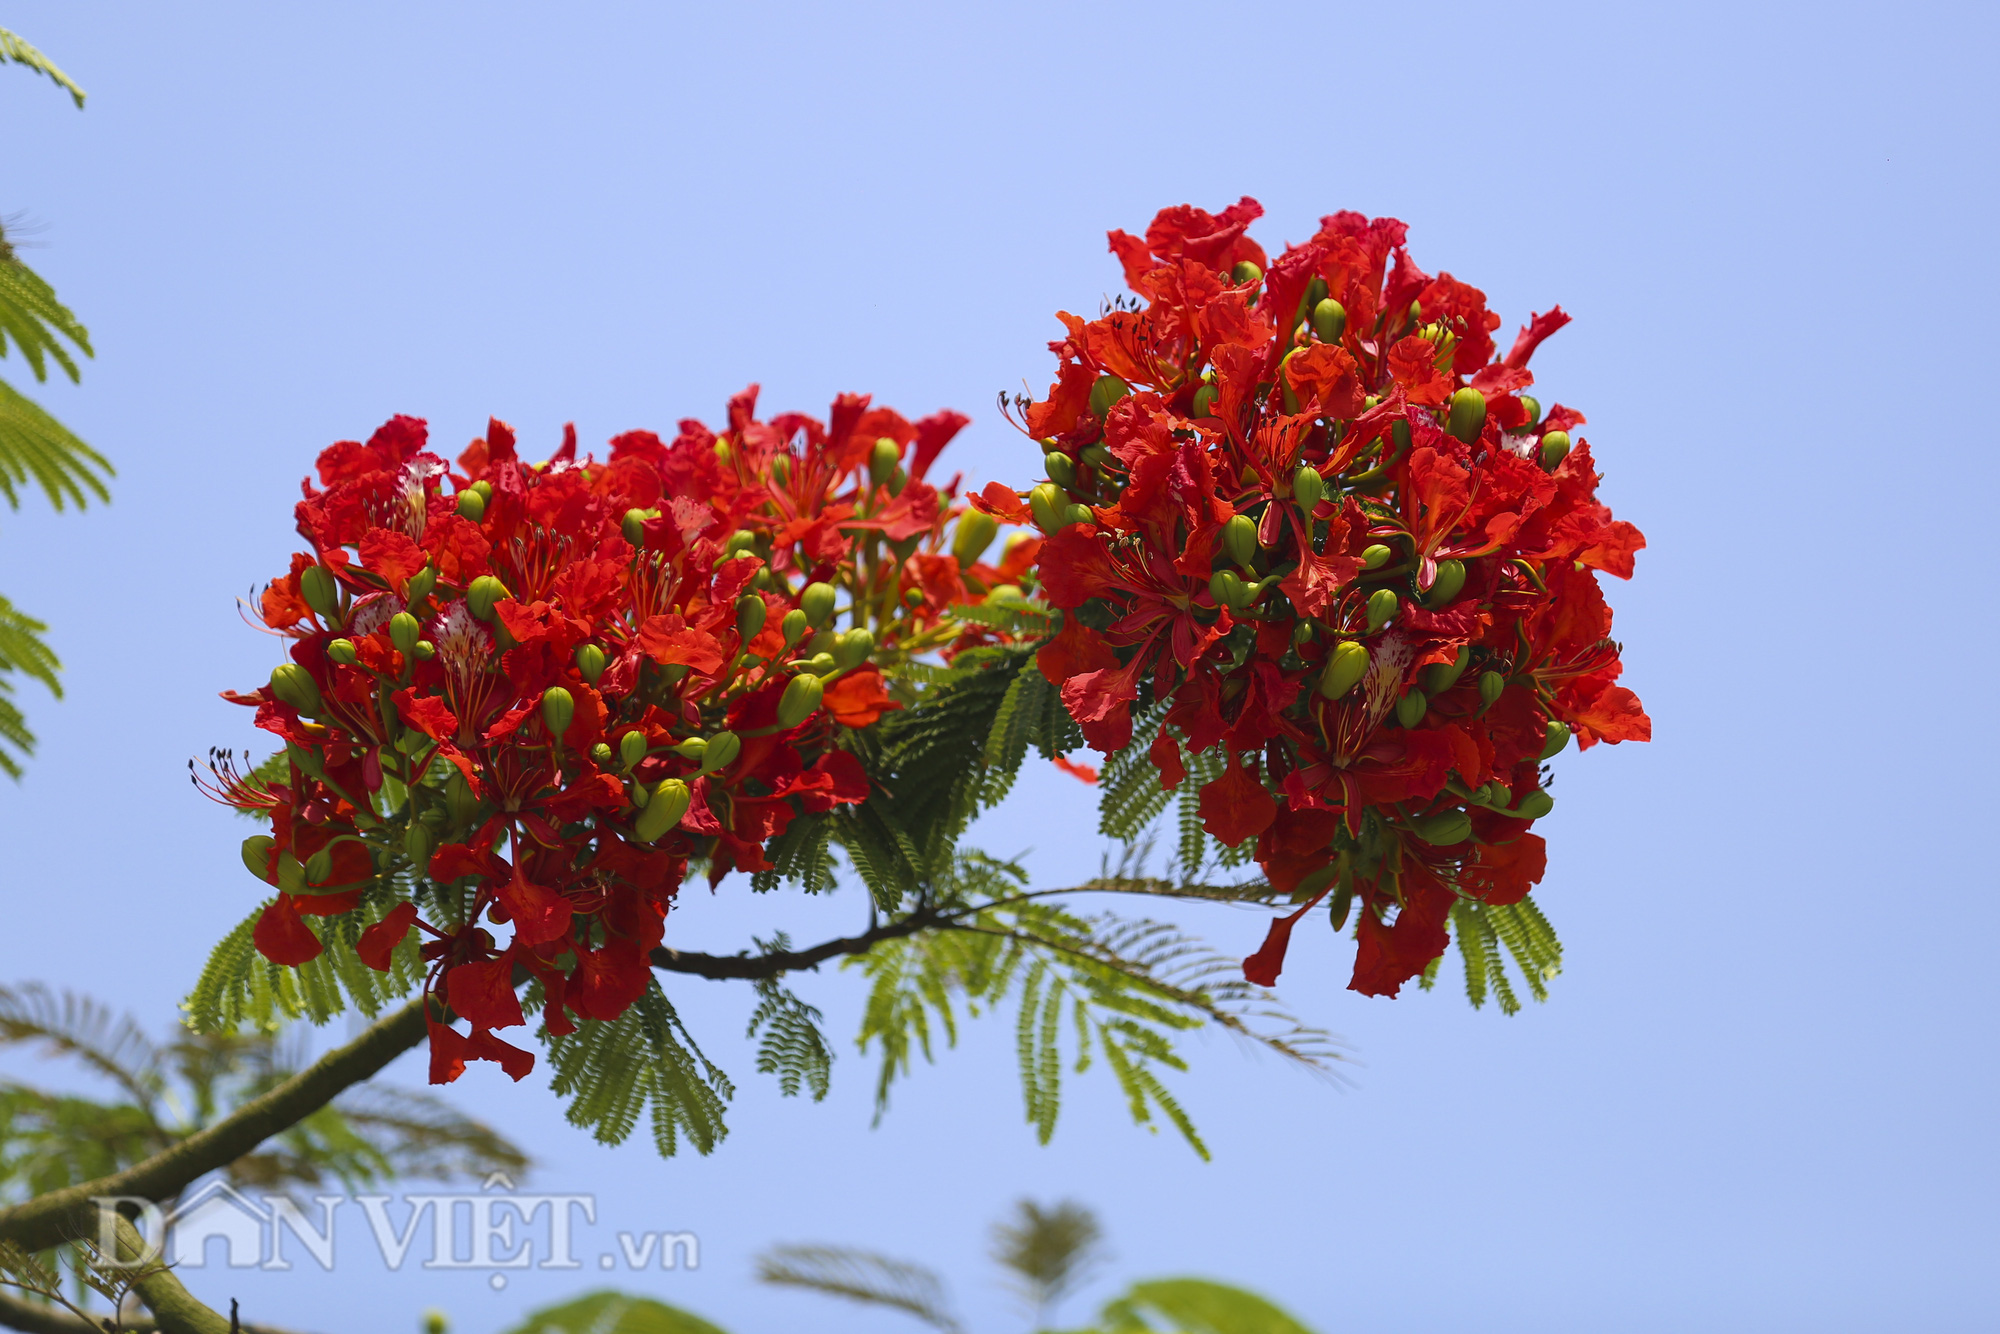 Mê mẩn ngắm nhìn hoa phượng nở đỏ rực góc trời Hà Nội - Ảnh 3.